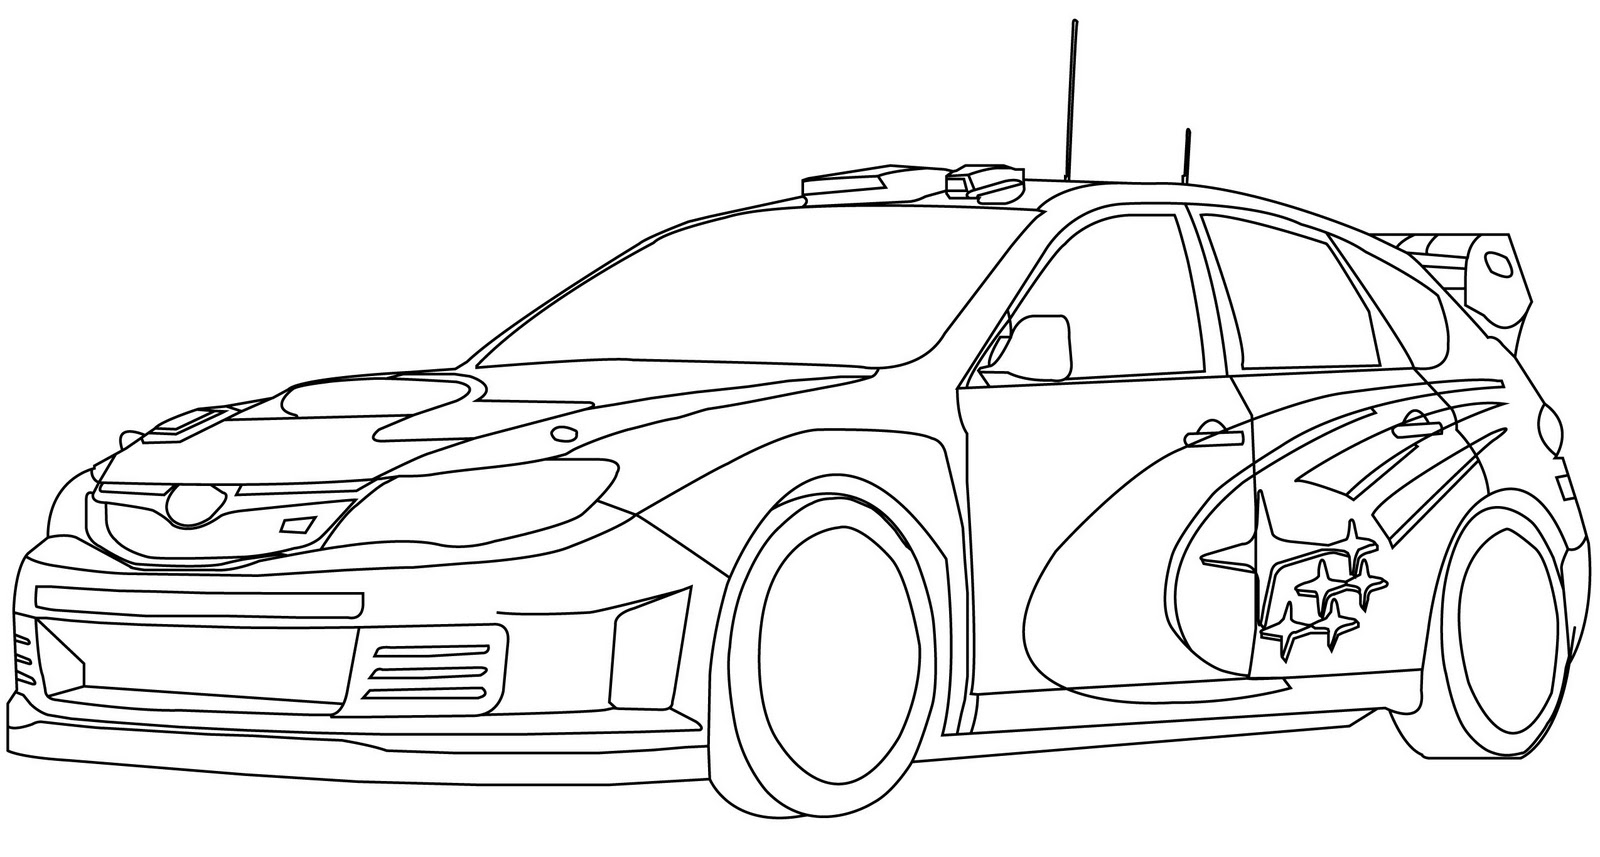 Subaru Wrx Sti Coloring Pages Sketch Coloring Page